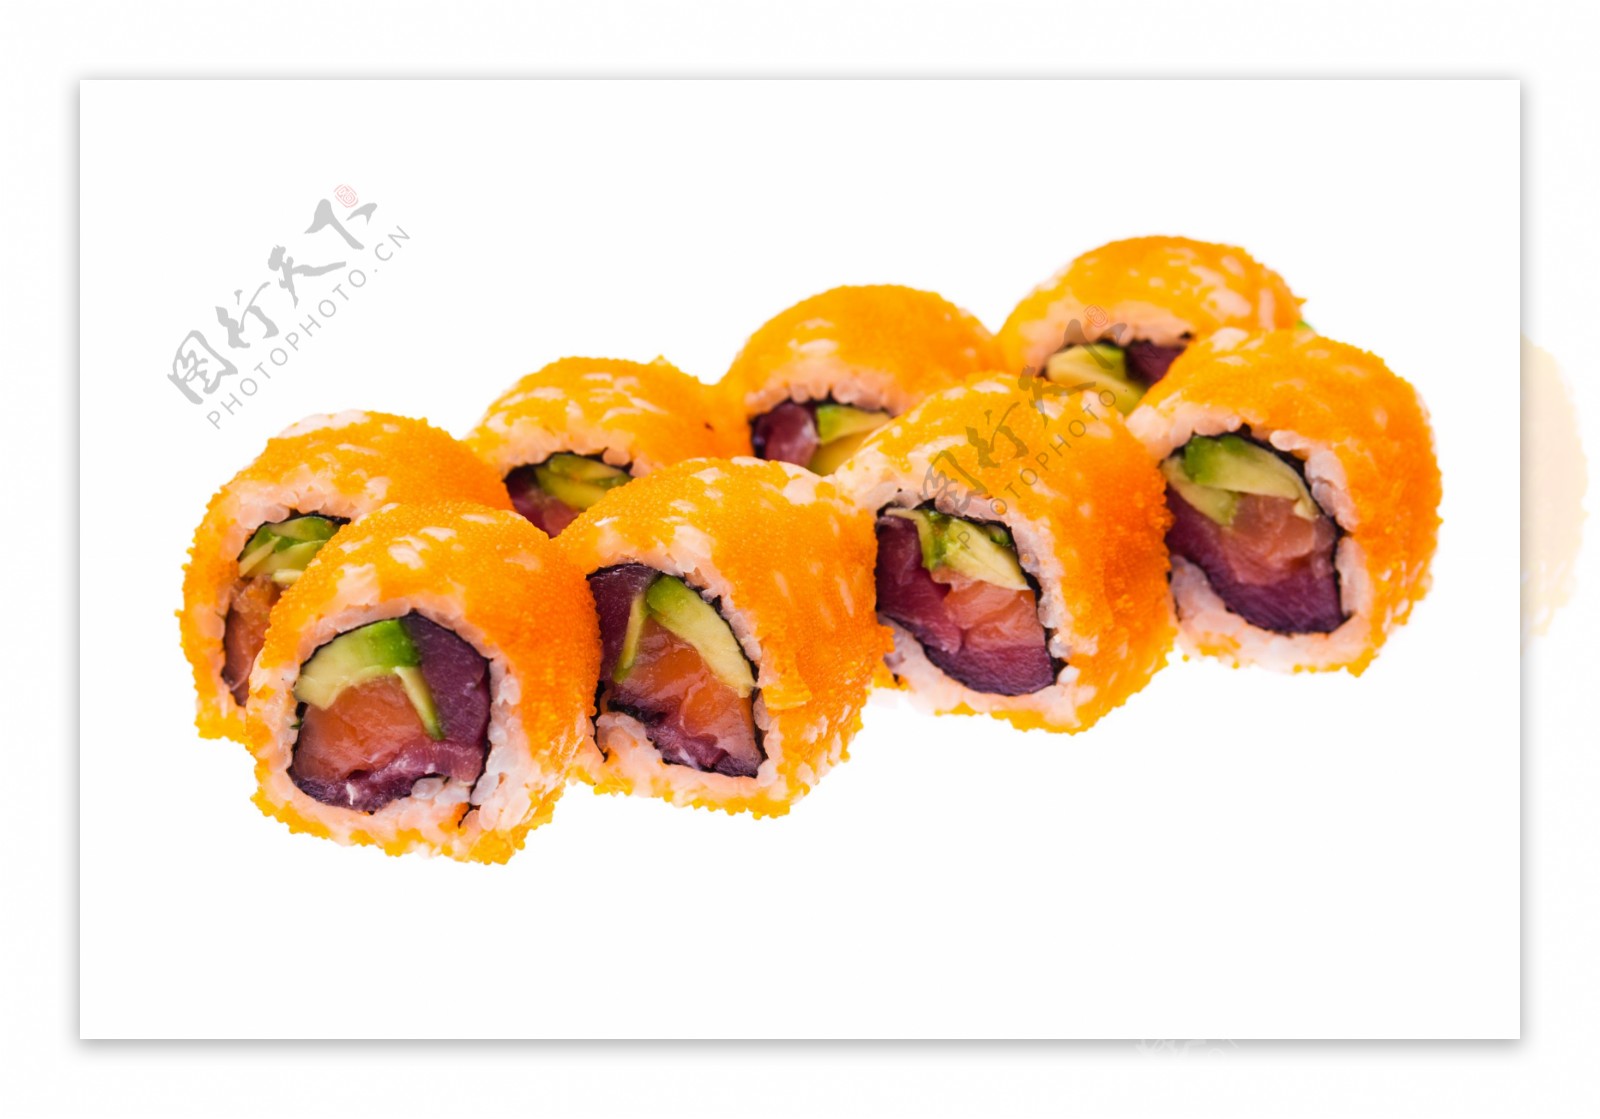 寿司美味图片